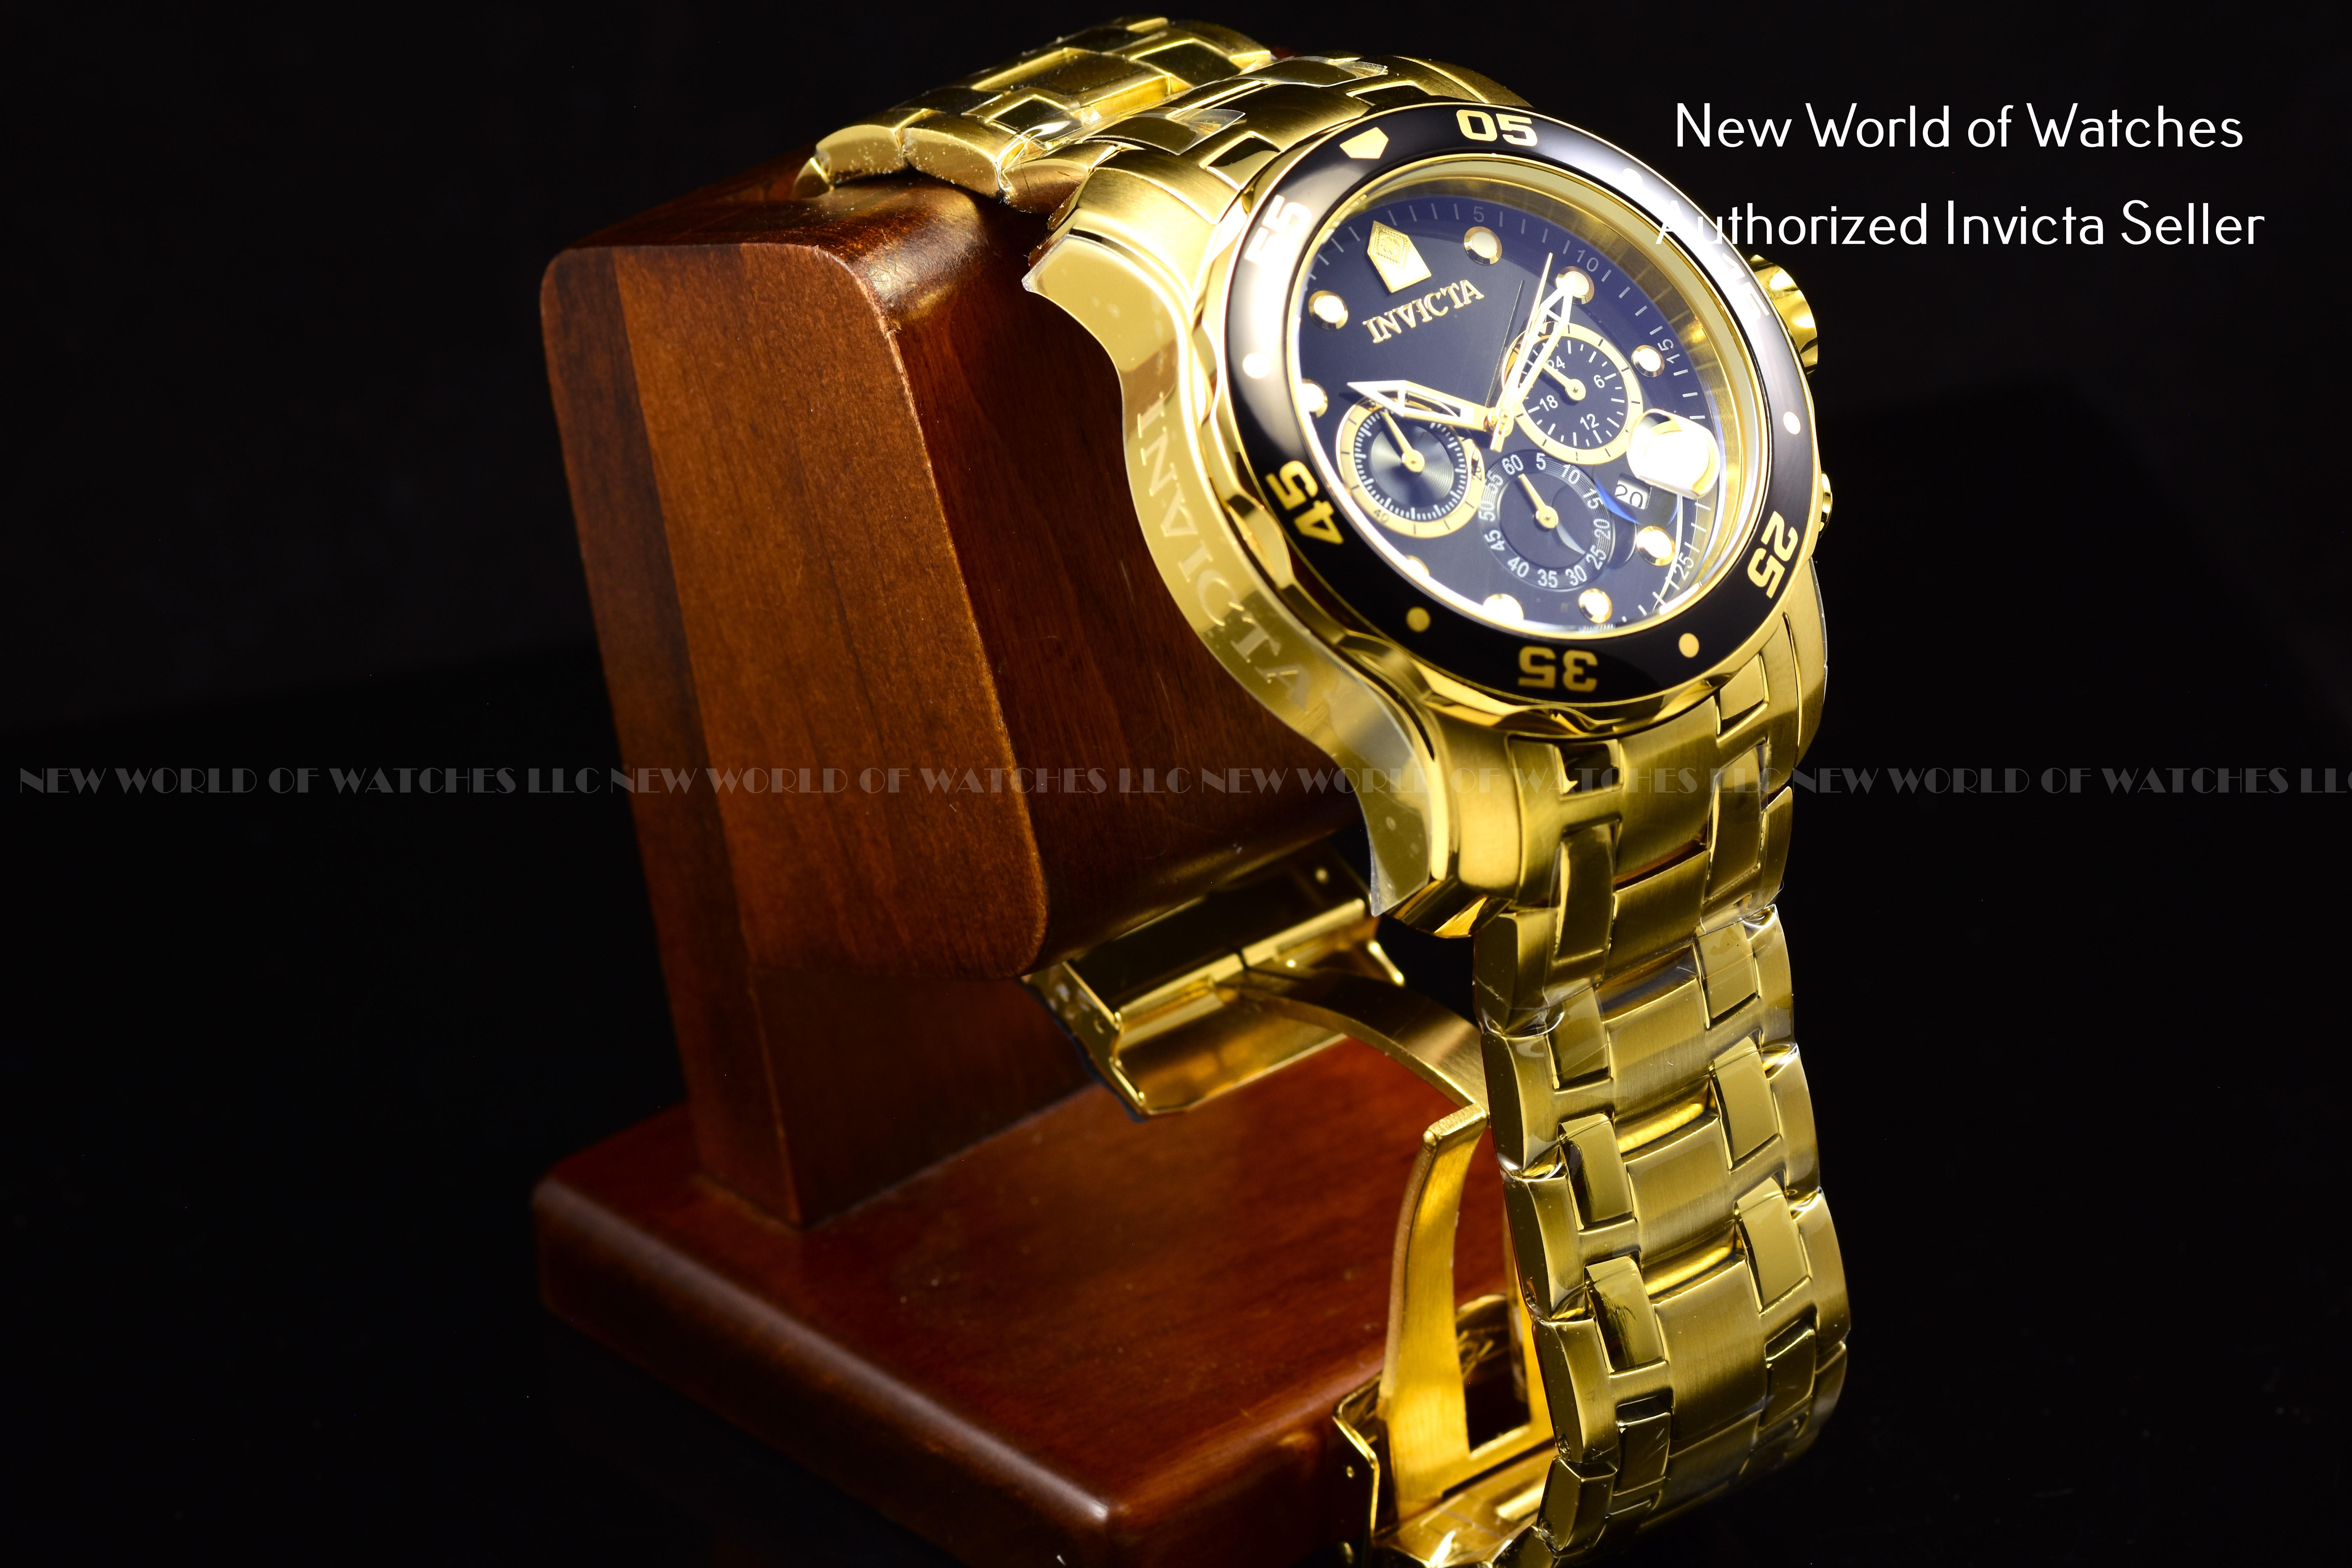 Reloj de pulsera Invicta Pro Diver 0072 de cuerpo color oro